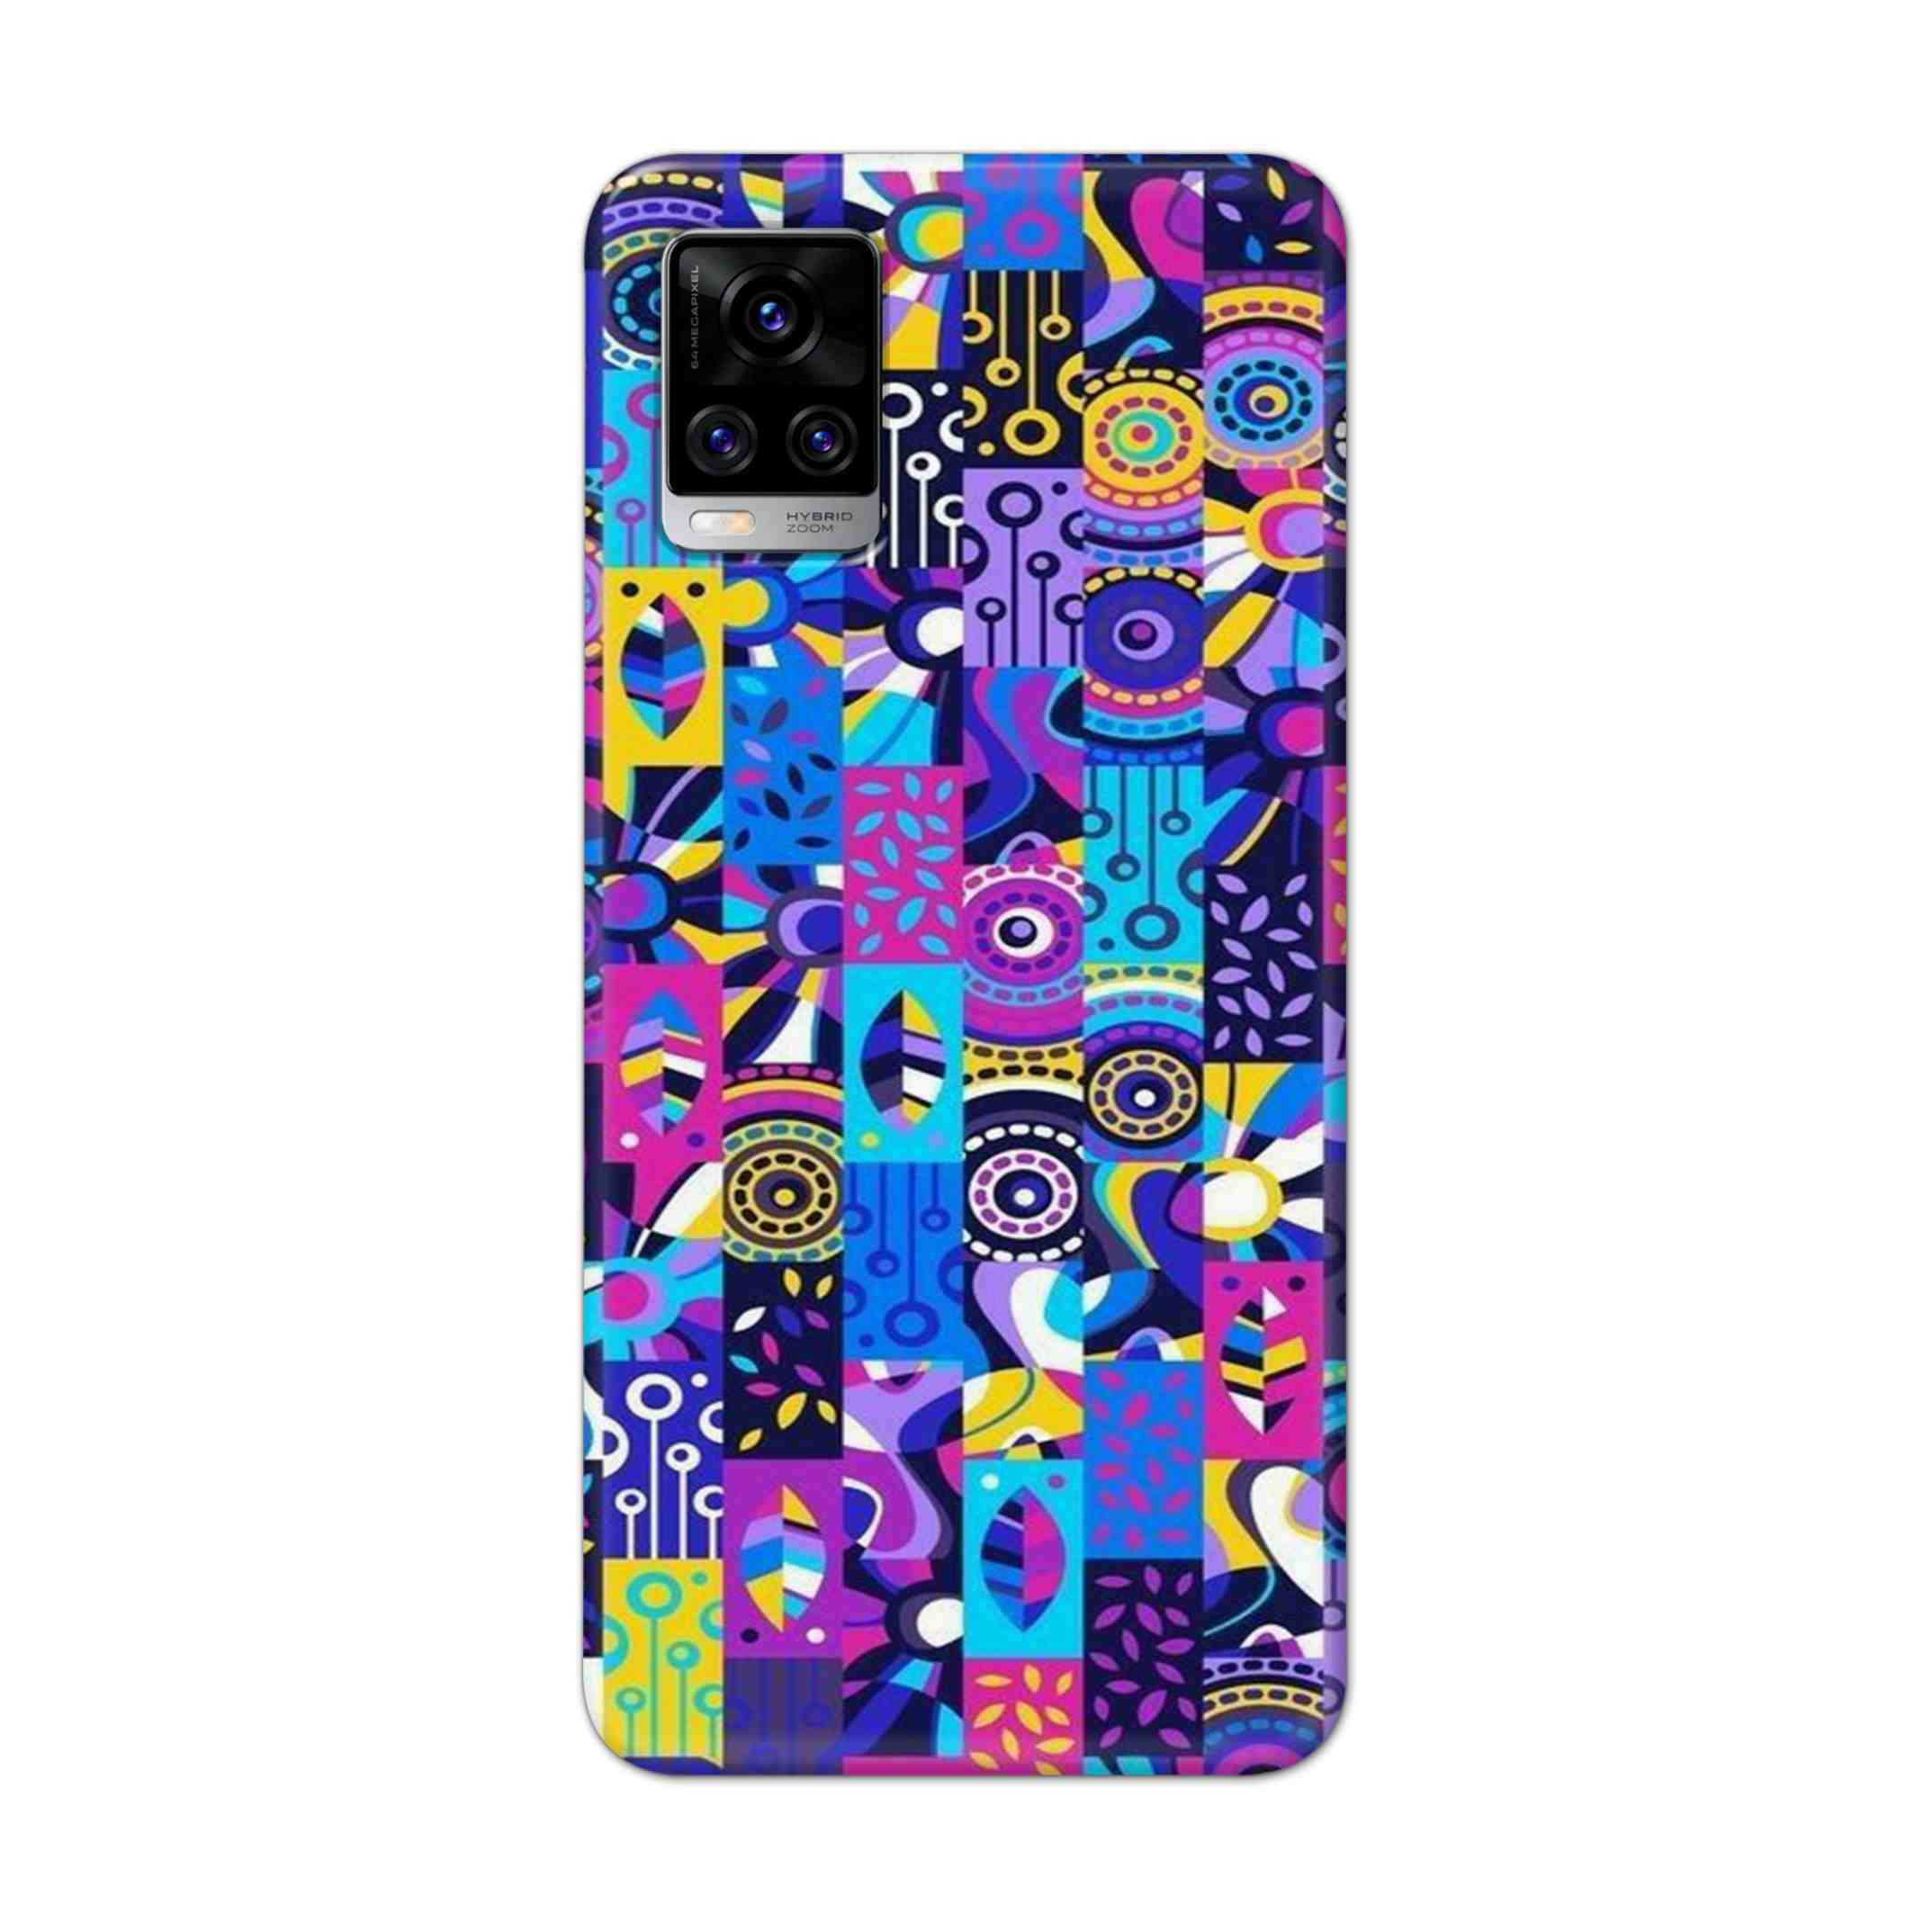 Buy Rainbow Art Hard Back Mobile Phone Case Cover For Vivo V20 Pro Online